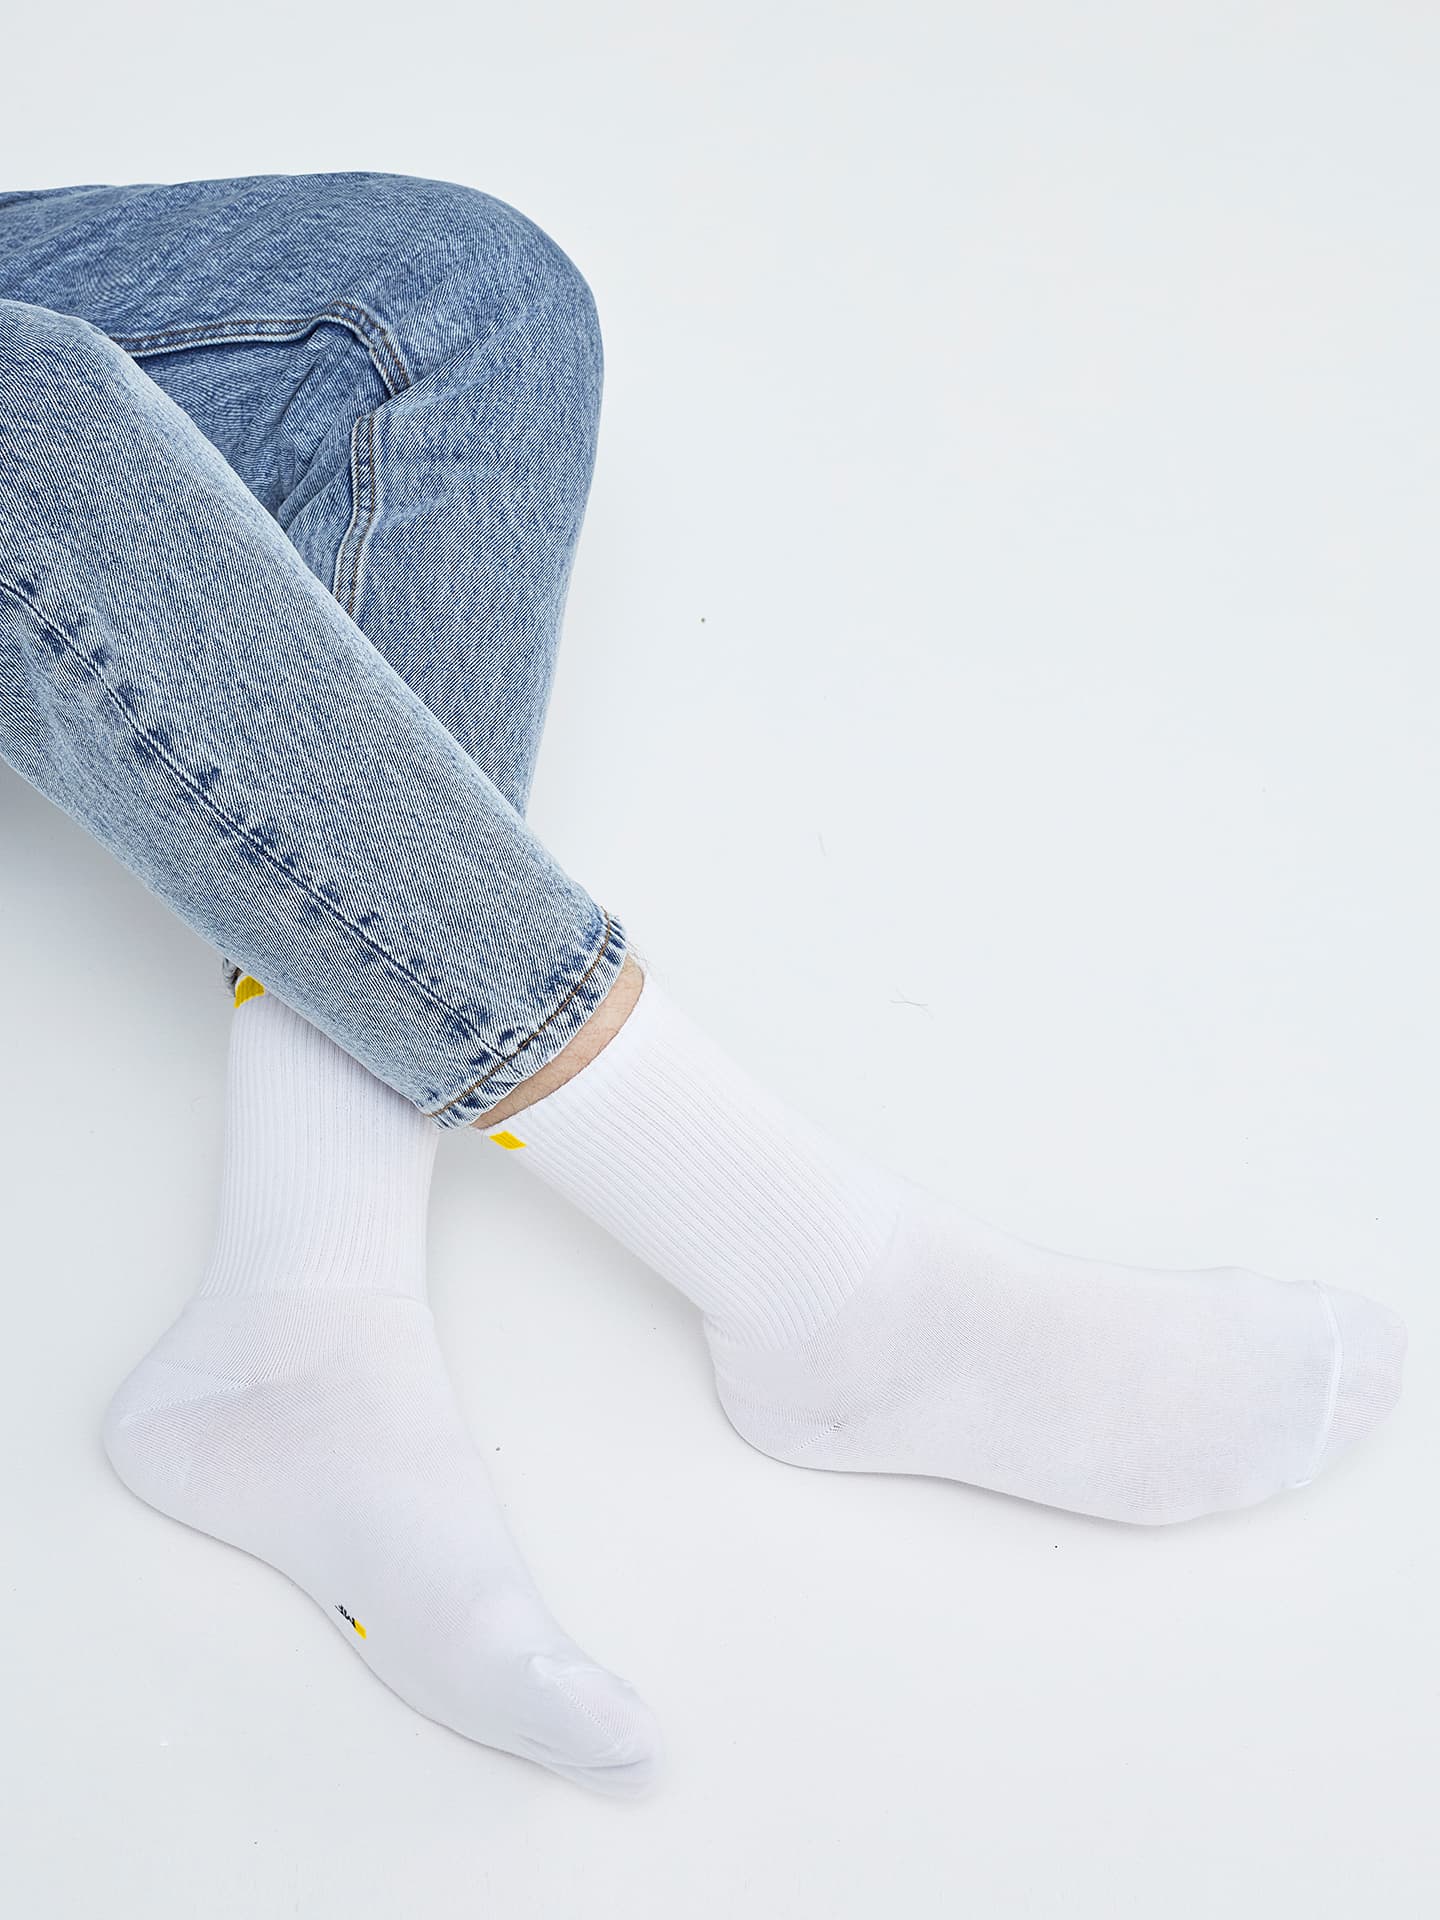 Высокие мужские носки белого цвета с желтым прямоугольником